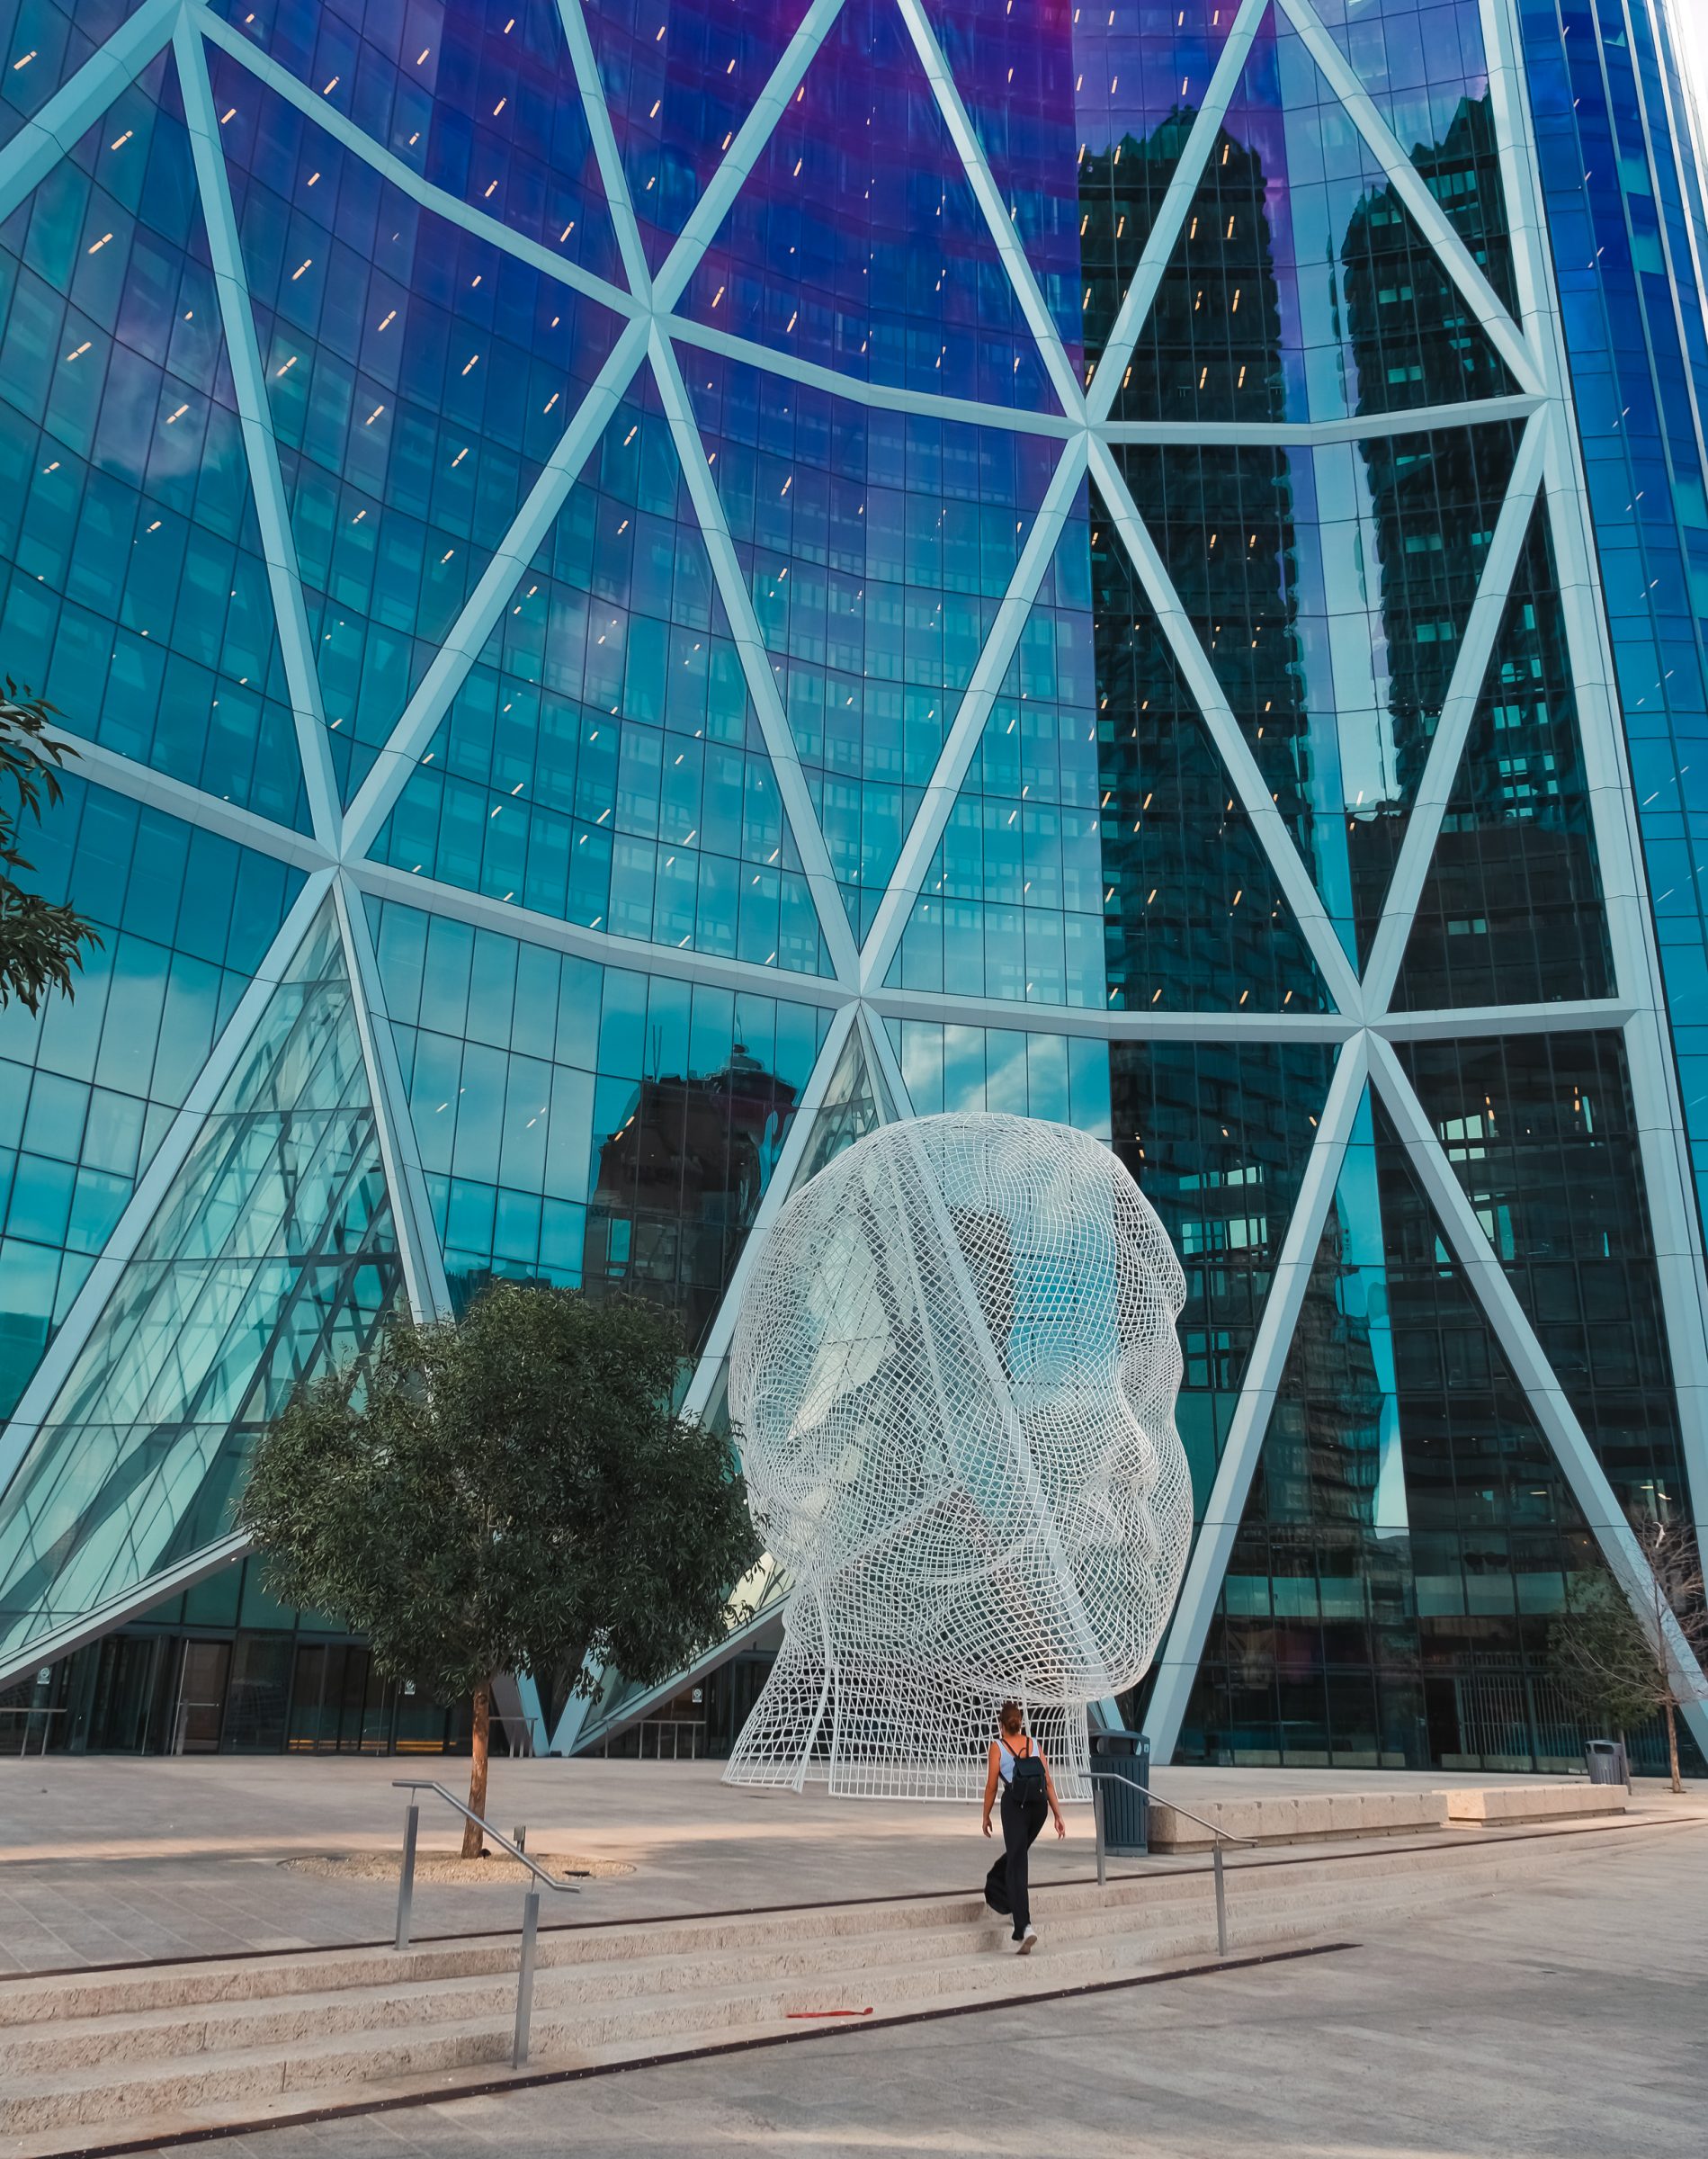 Escultura do País das Maravilhas | Dicas para Calgary